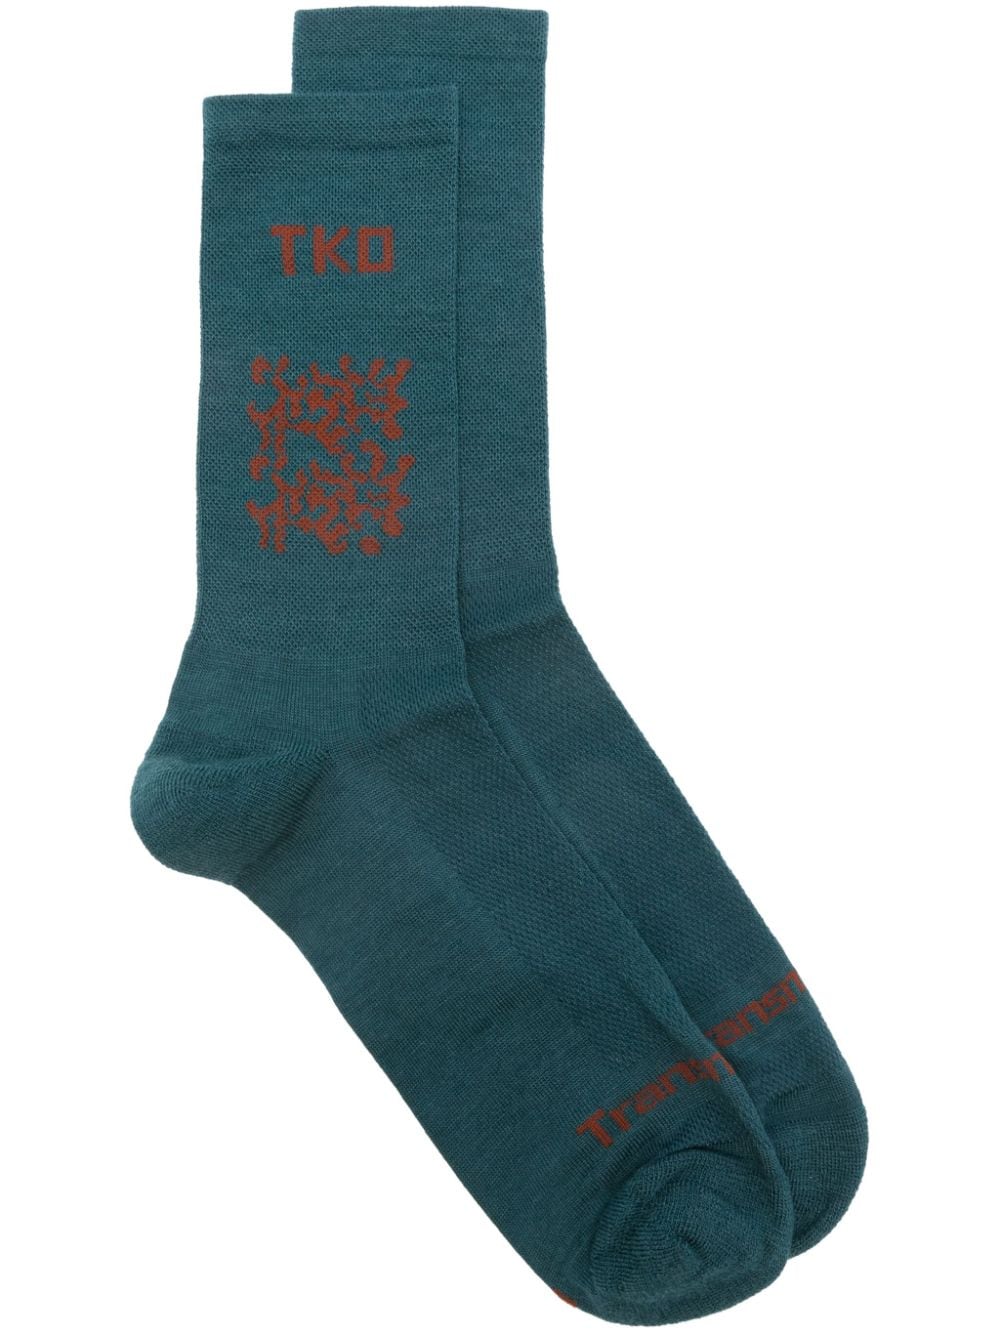 TKO-motif ribbed socks